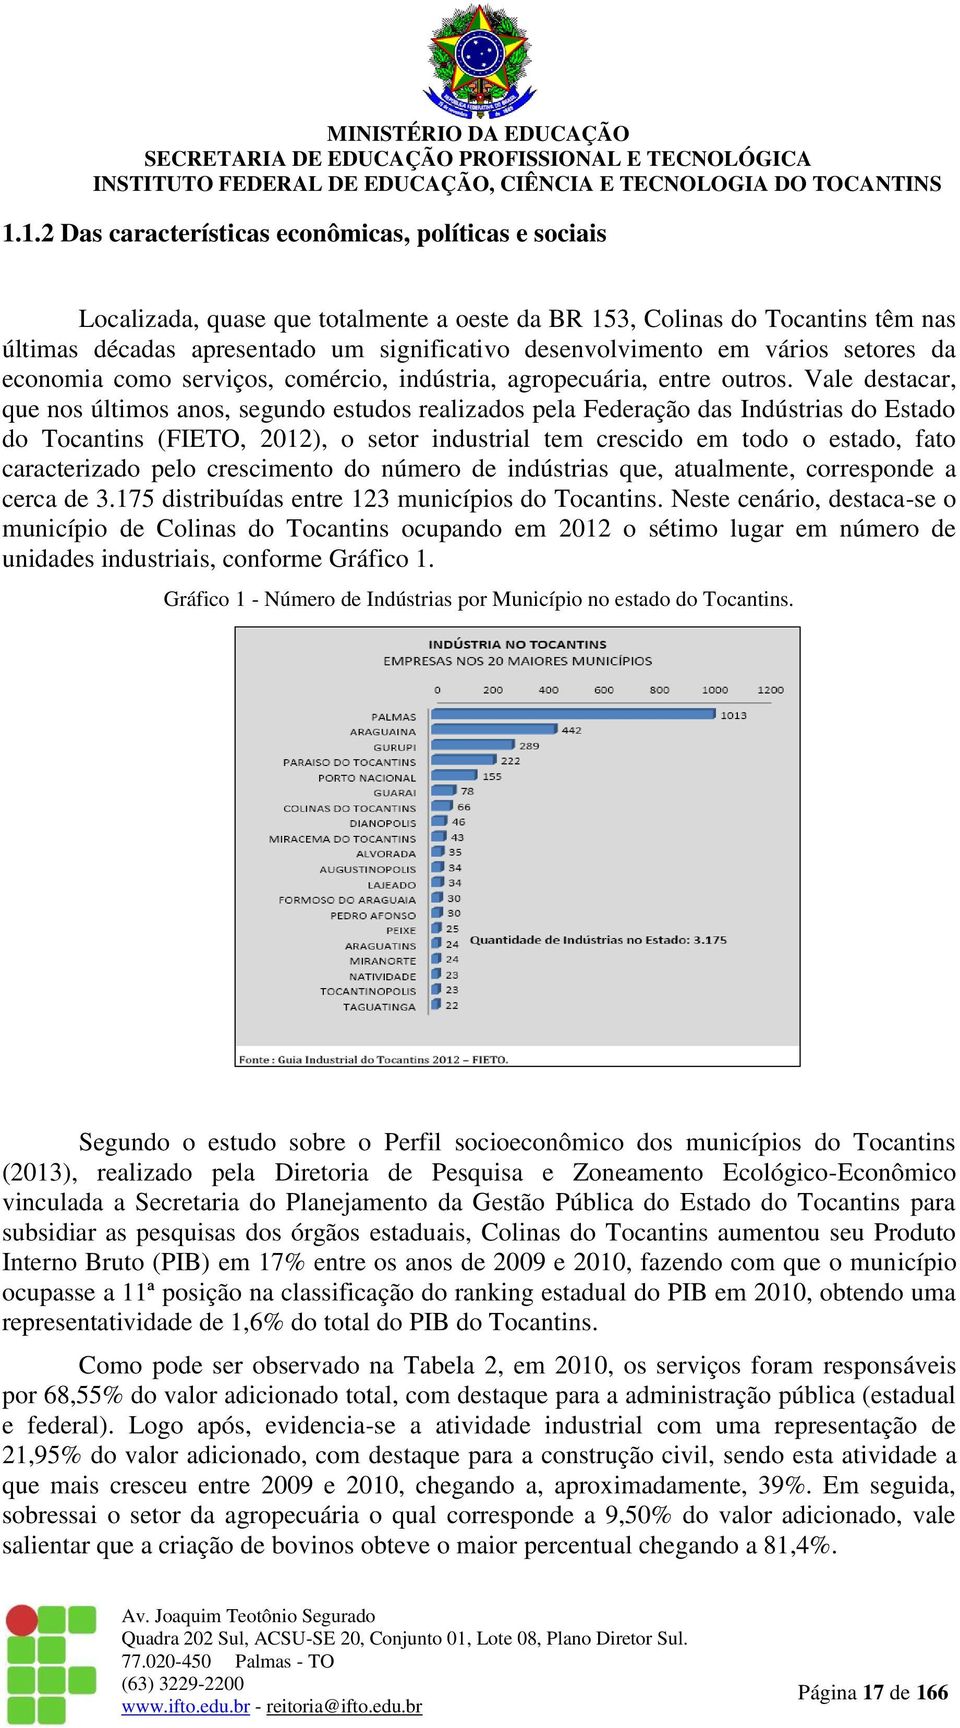 Vale destacar, que nos últimos anos, segundo estudos realizados pela Federação das Indústrias do Estado do Tocantins (FIETO, 2012), o setor industrial tem crescido em todo o estado, fato